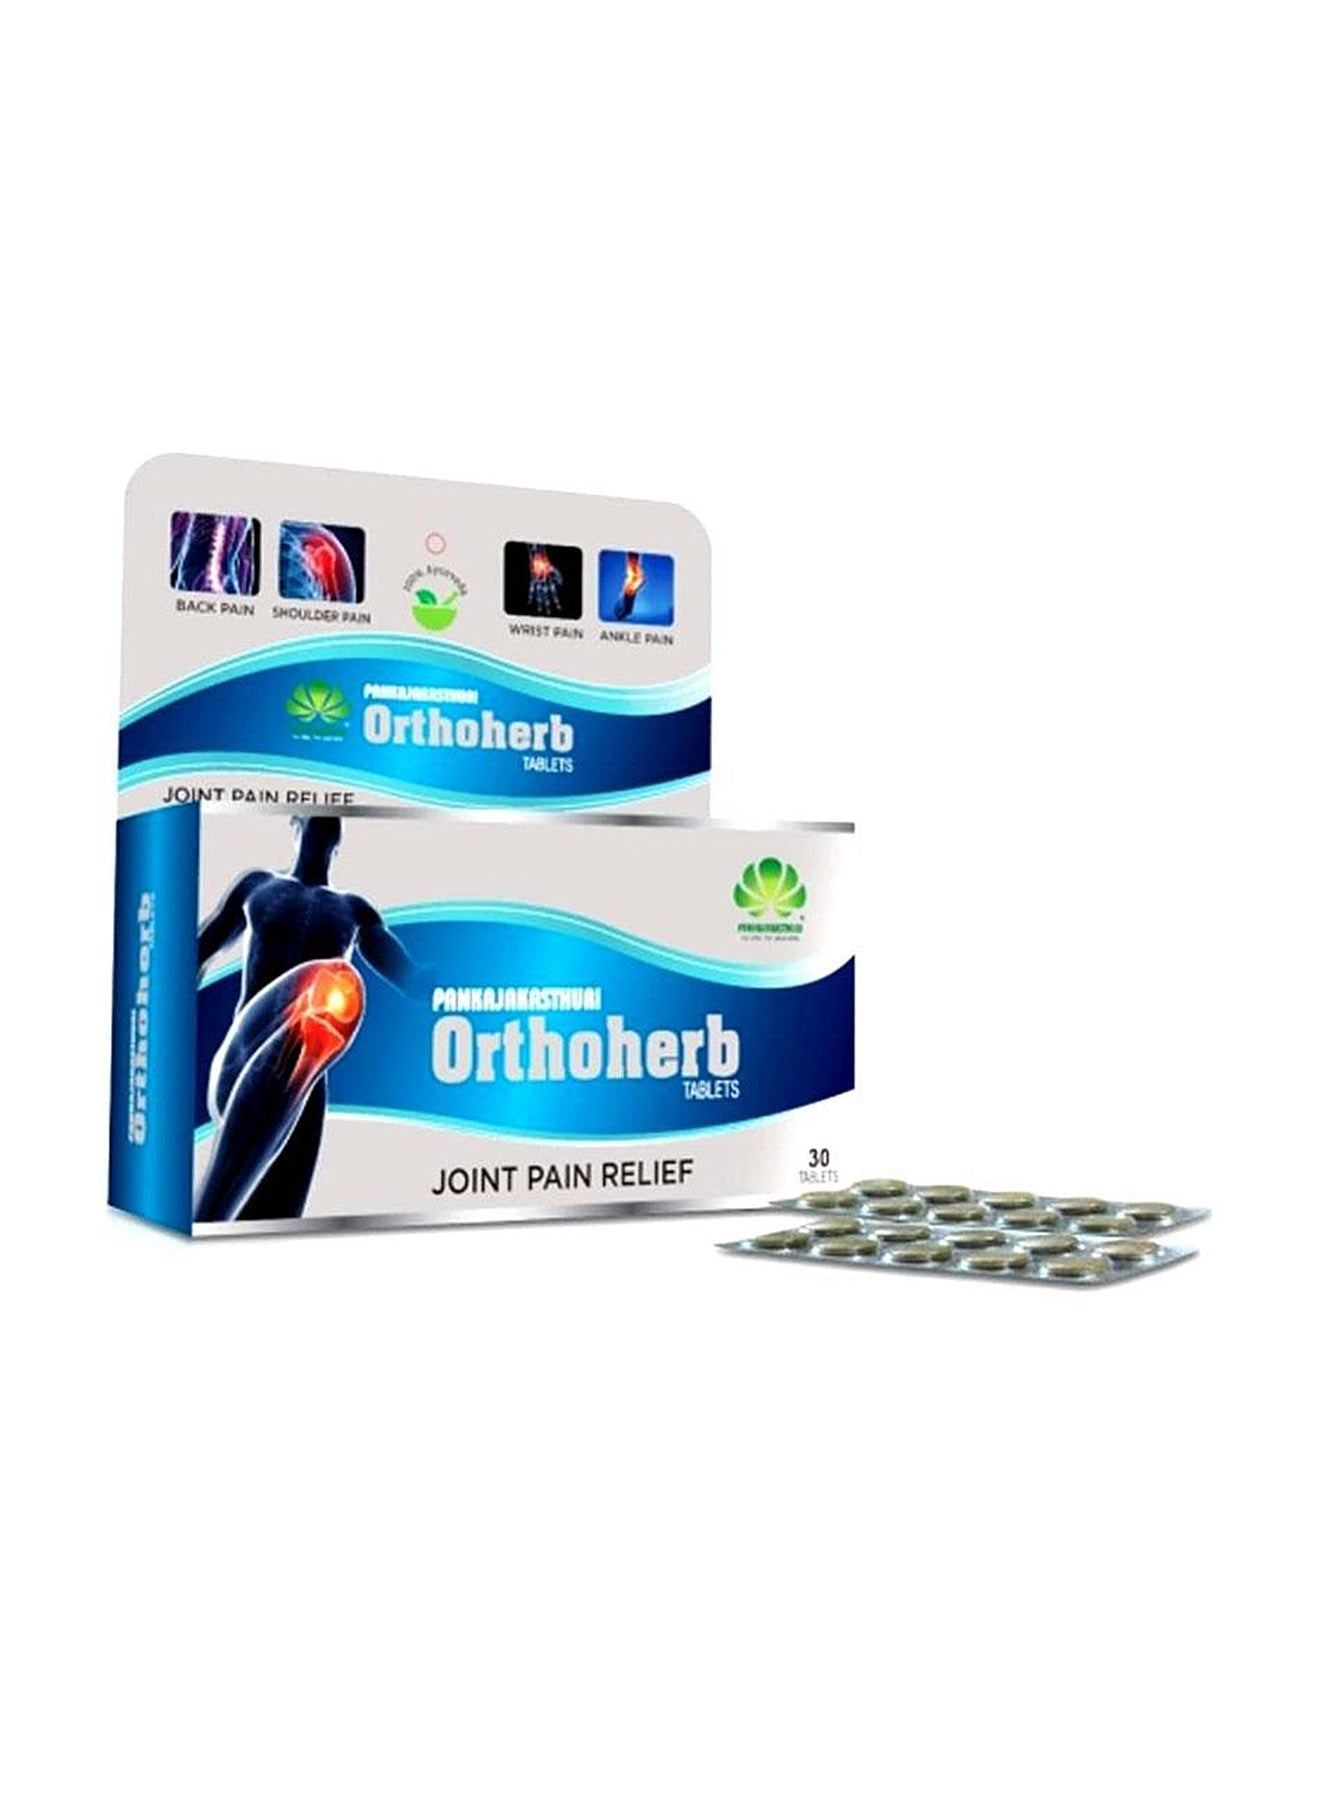 Pankajakasthuri Orthoherb 60 Tablets Value Pack of 3 